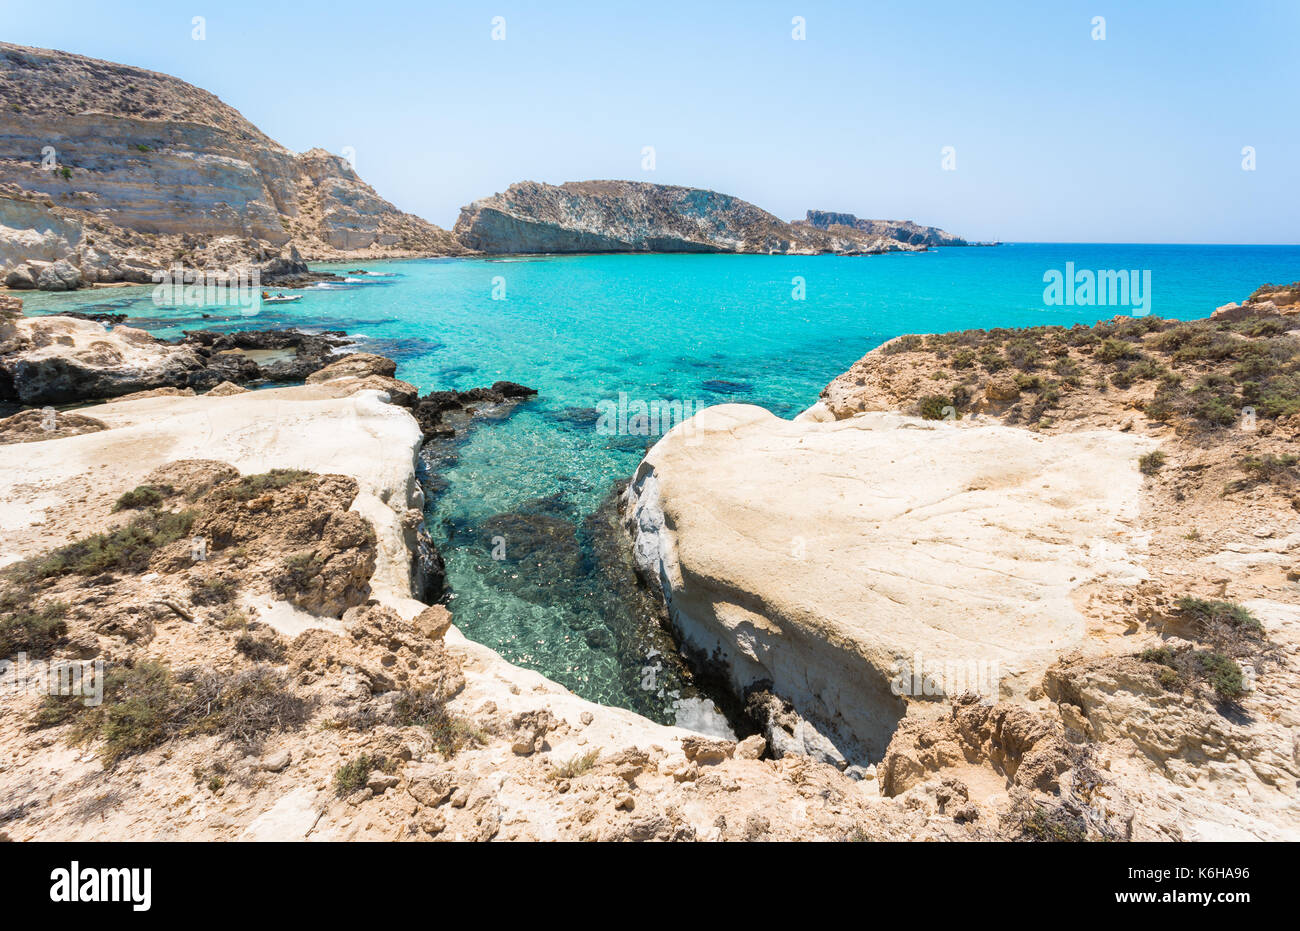 Tolle Aussicht auf der Insel Koufonisi mit magischen türkisfarbene Wasser, Lagunen, tropische Strände mit weißem Sand und antiken Ruinen auf Kreta, Griechenland Stockfoto